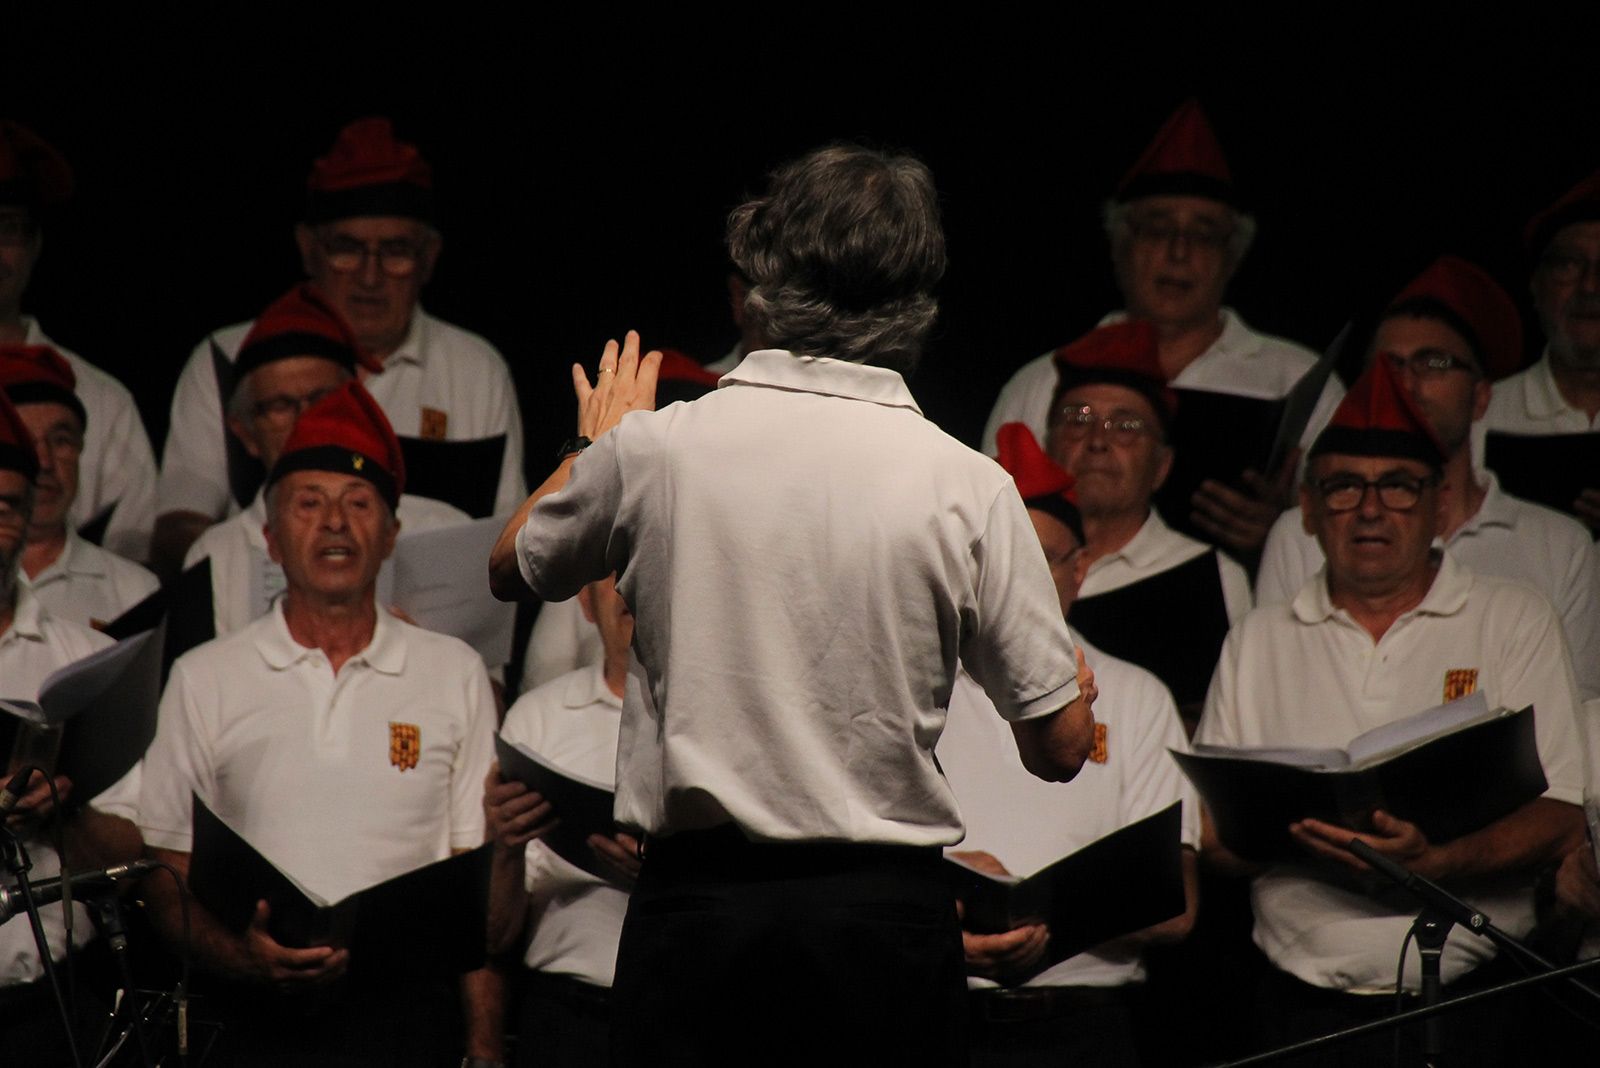 Concert de Festa Major amb la Coral la Lira i la Cobla Sant Jordi. FOTO: Paula Galván